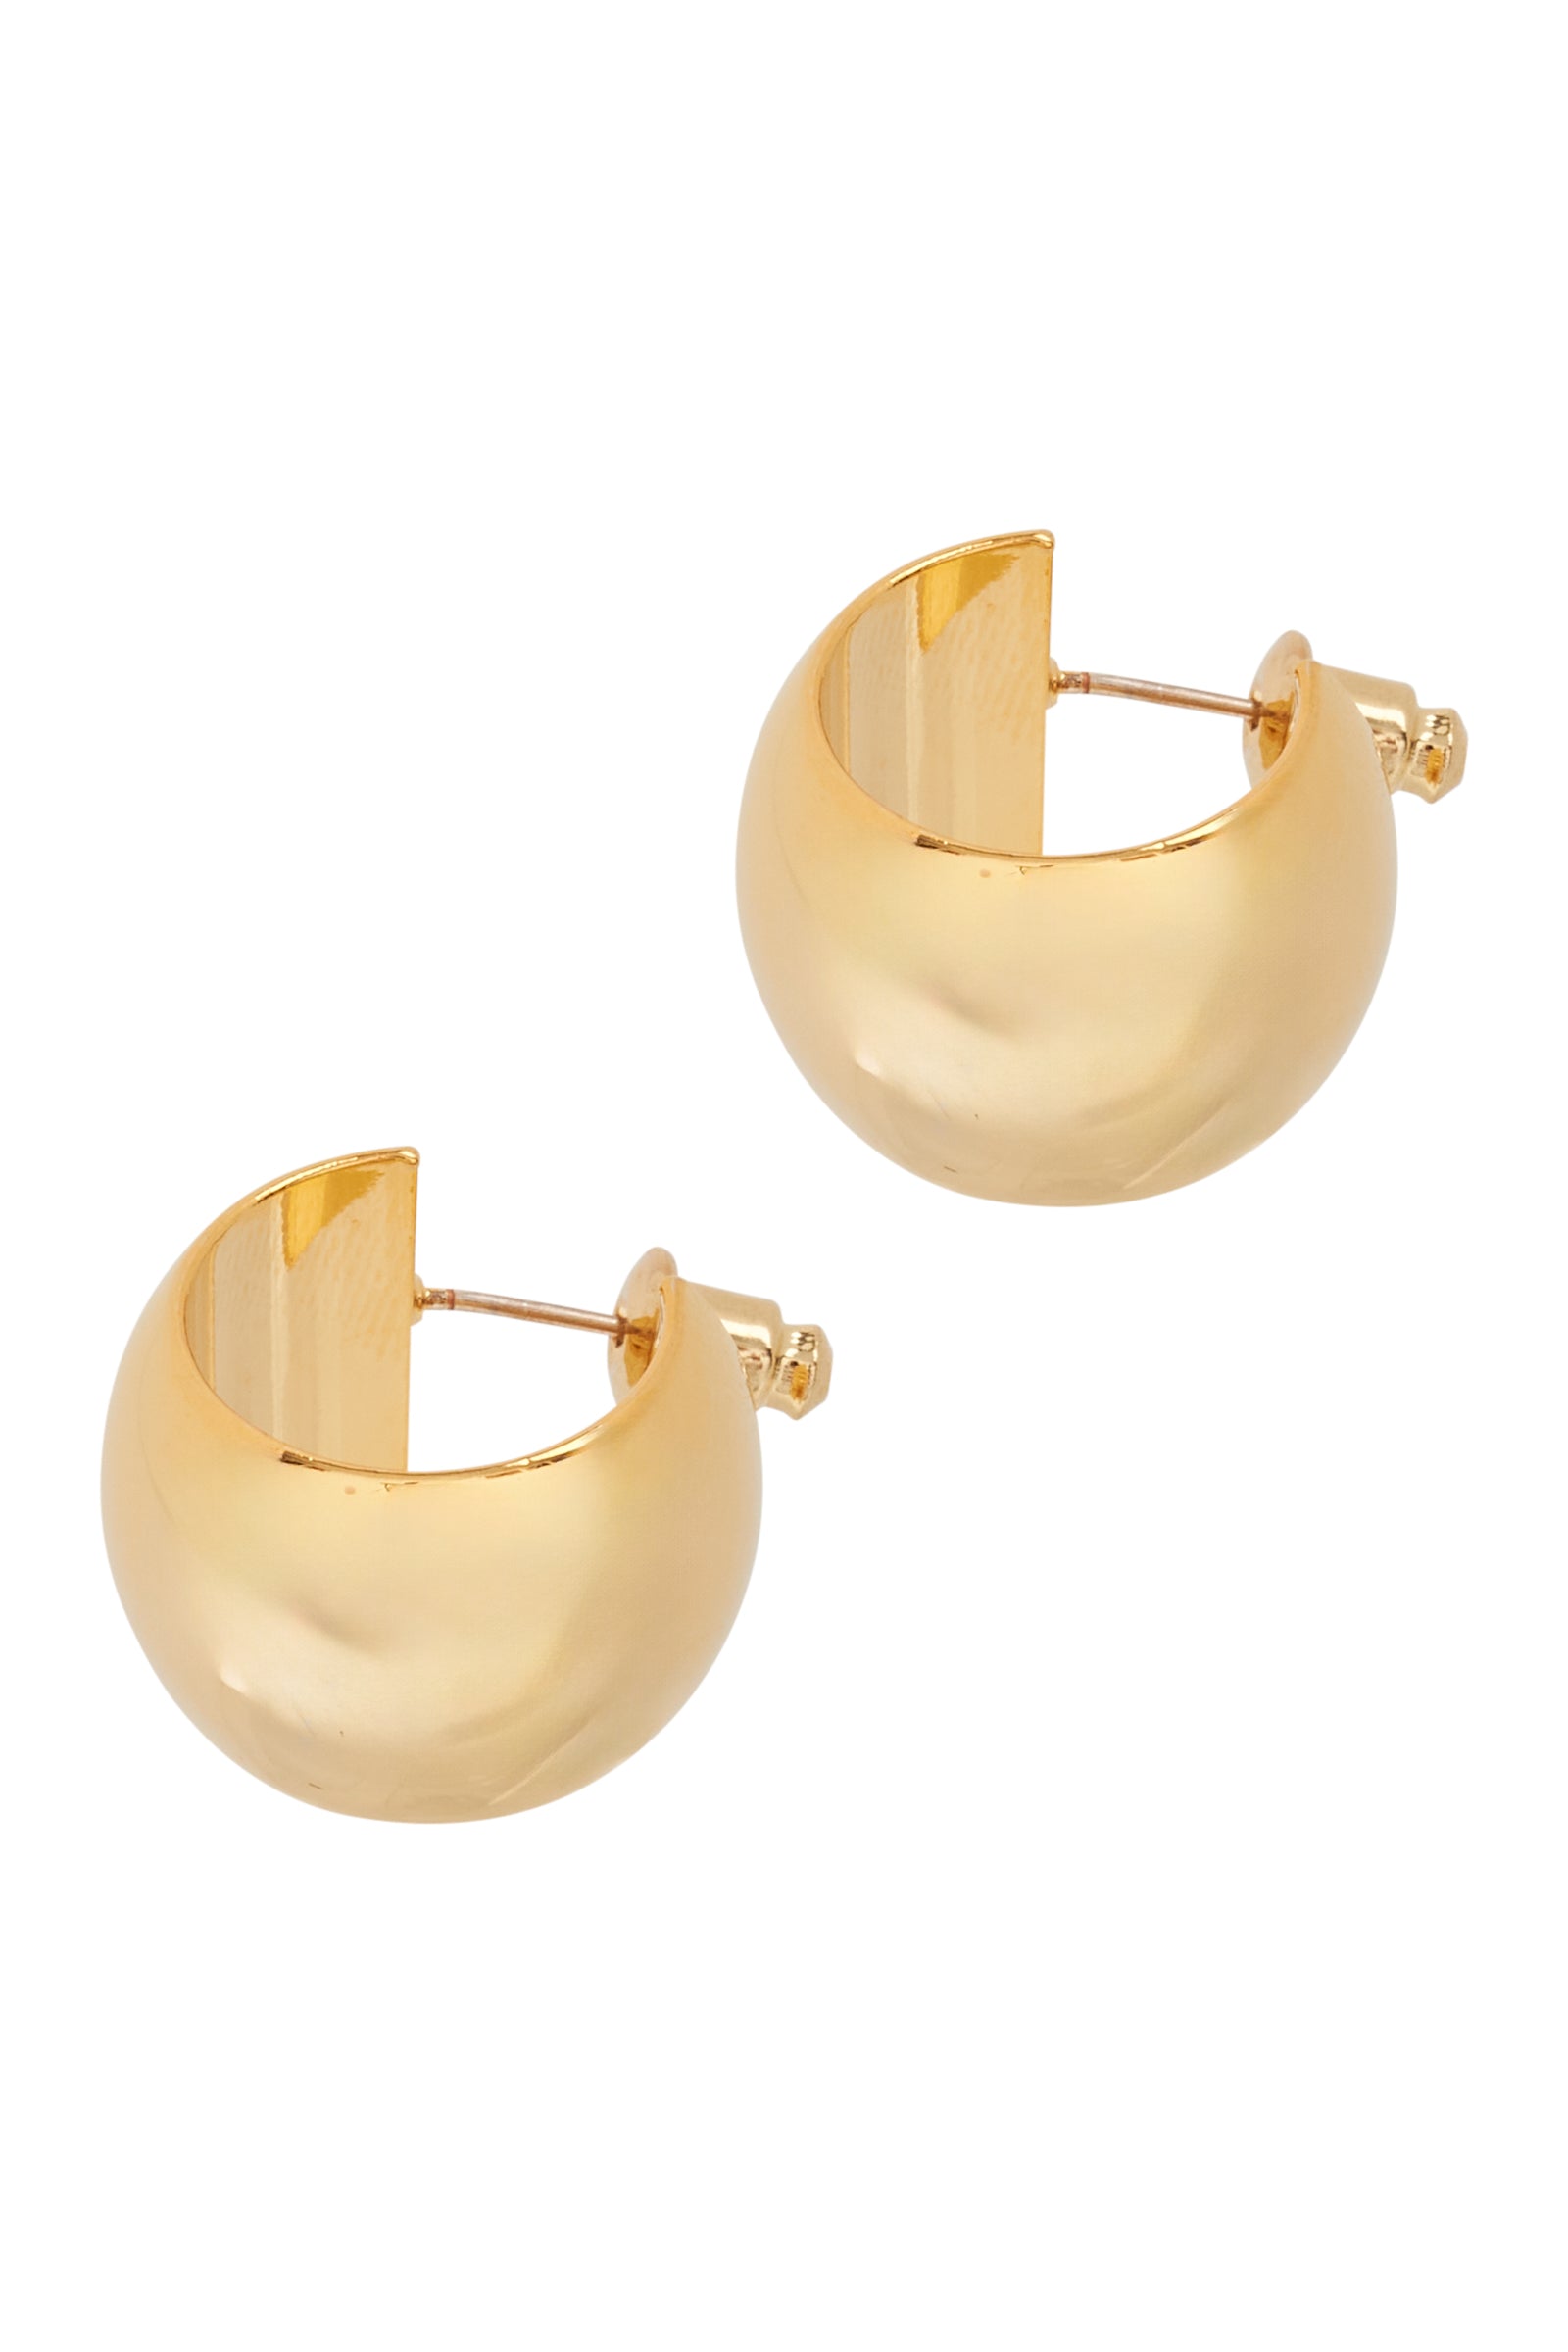 Mayan Hoop Earring - Gold Huggie - eb&ive Earring